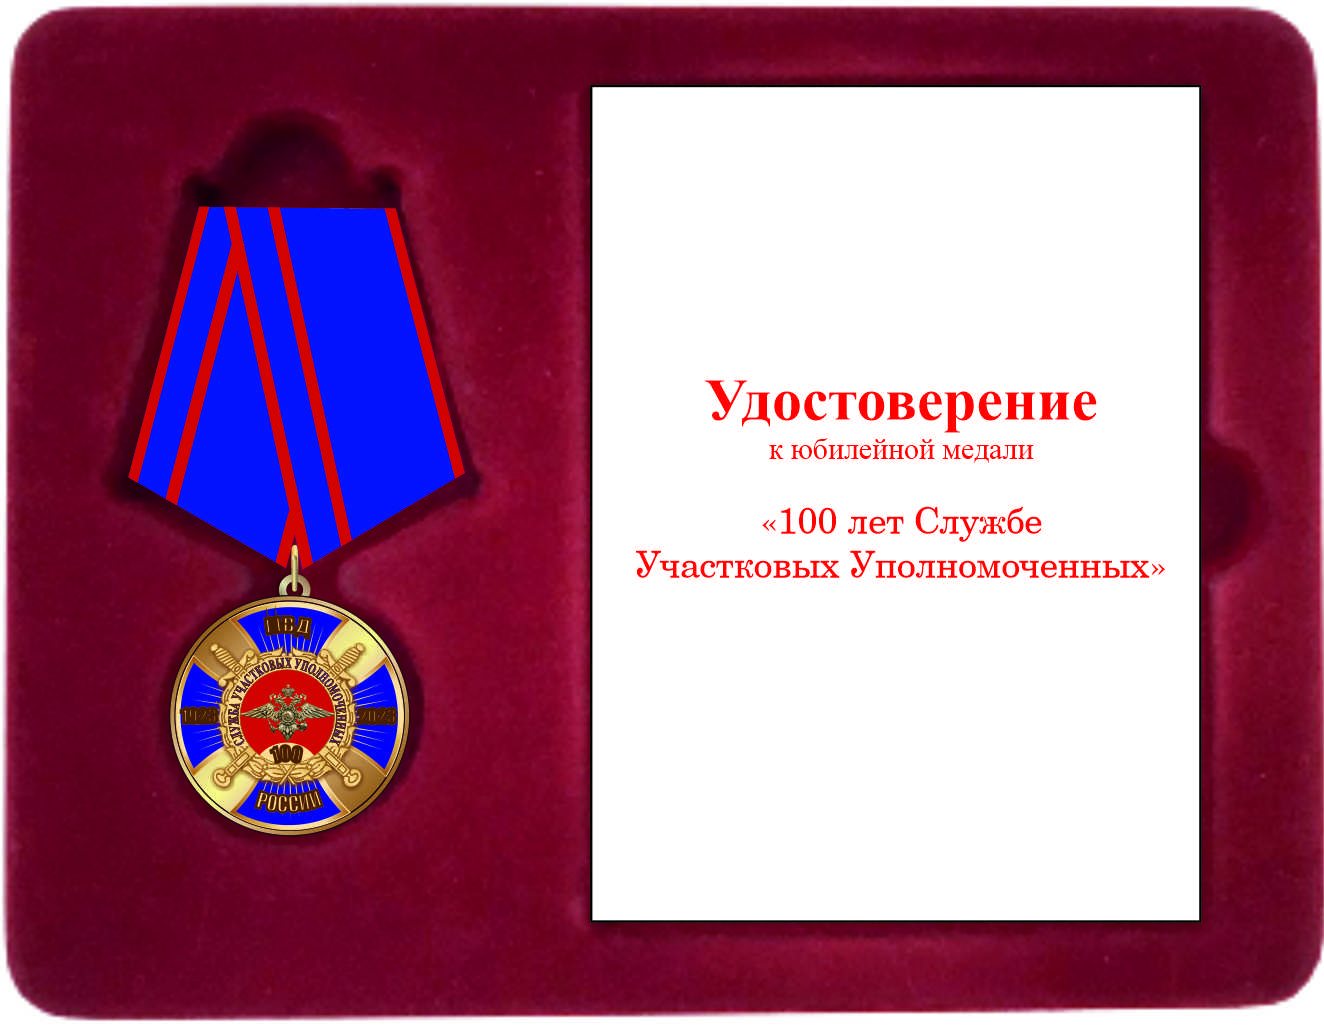 Юбилейная медаль "100 лет службе участковых уполномоченных "